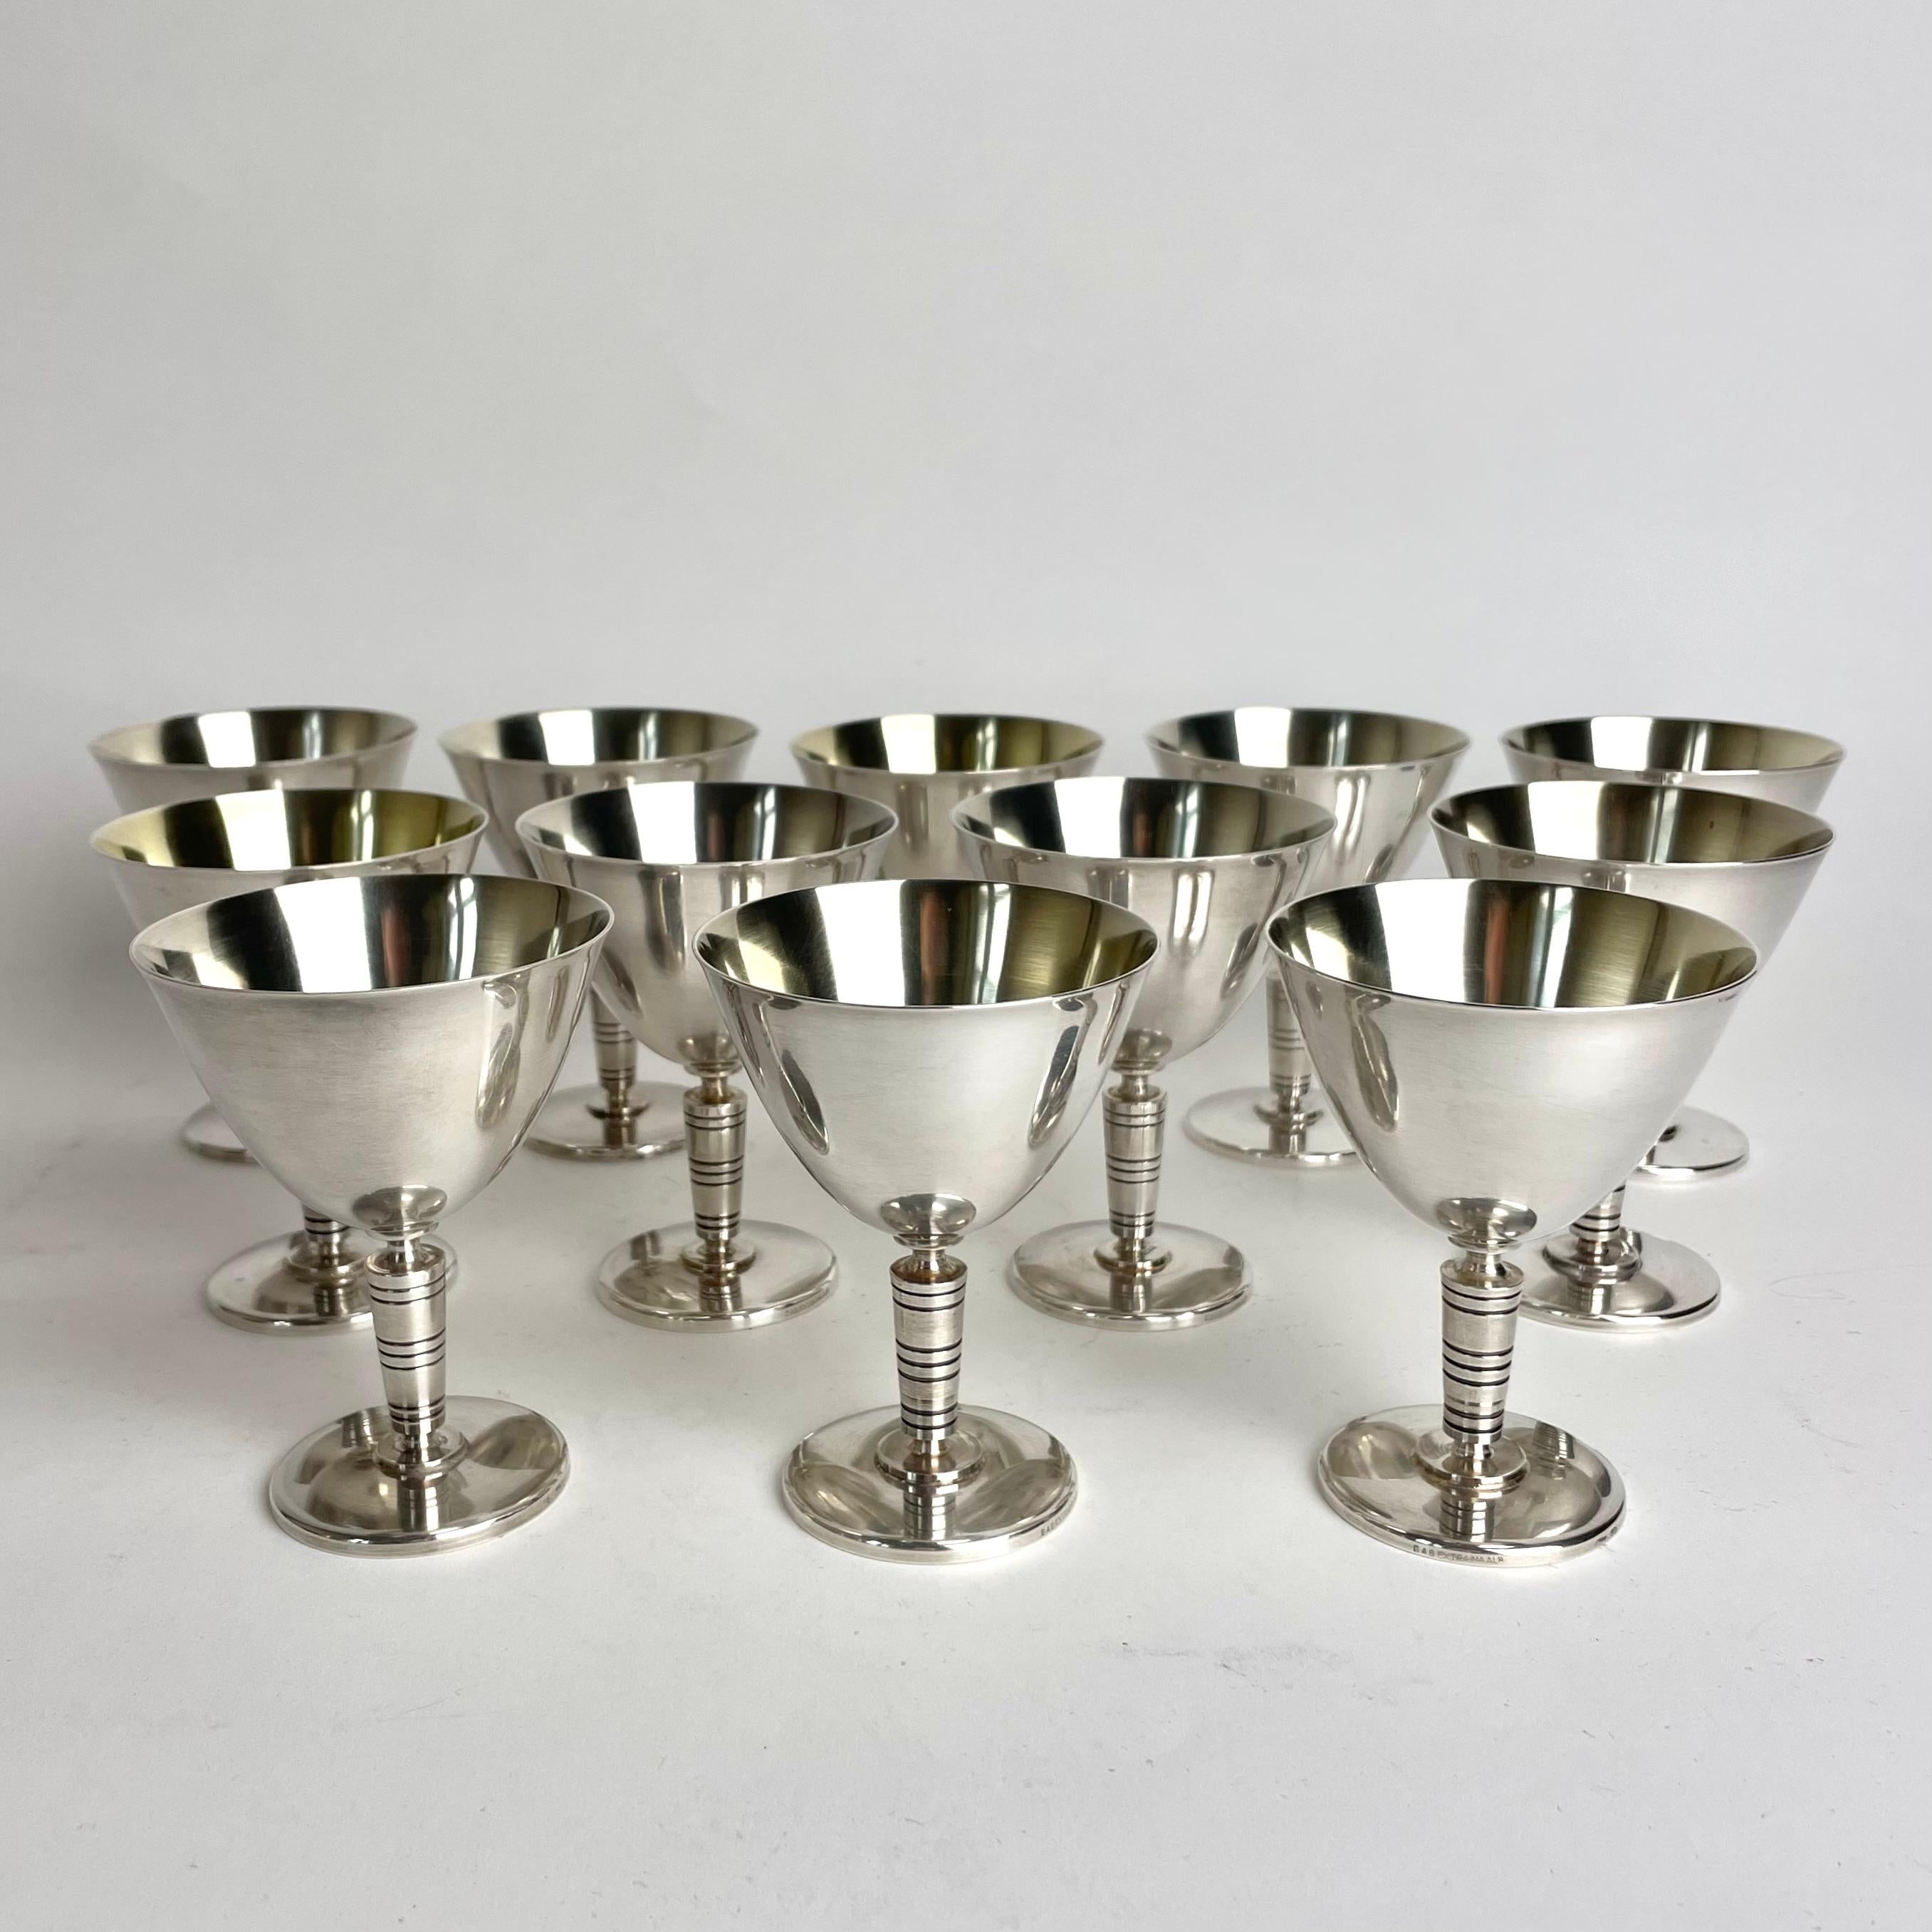 Une douzaine de verres à cocktail Art déco en métal argenté des années 1930 provenant de GAB, Guldsmedsaktiebolaget en Suède. Un design très ancien. L'intérieur des bols en verre présente des traces d'usure de la dorure.

Usure conforme à l'âge et à